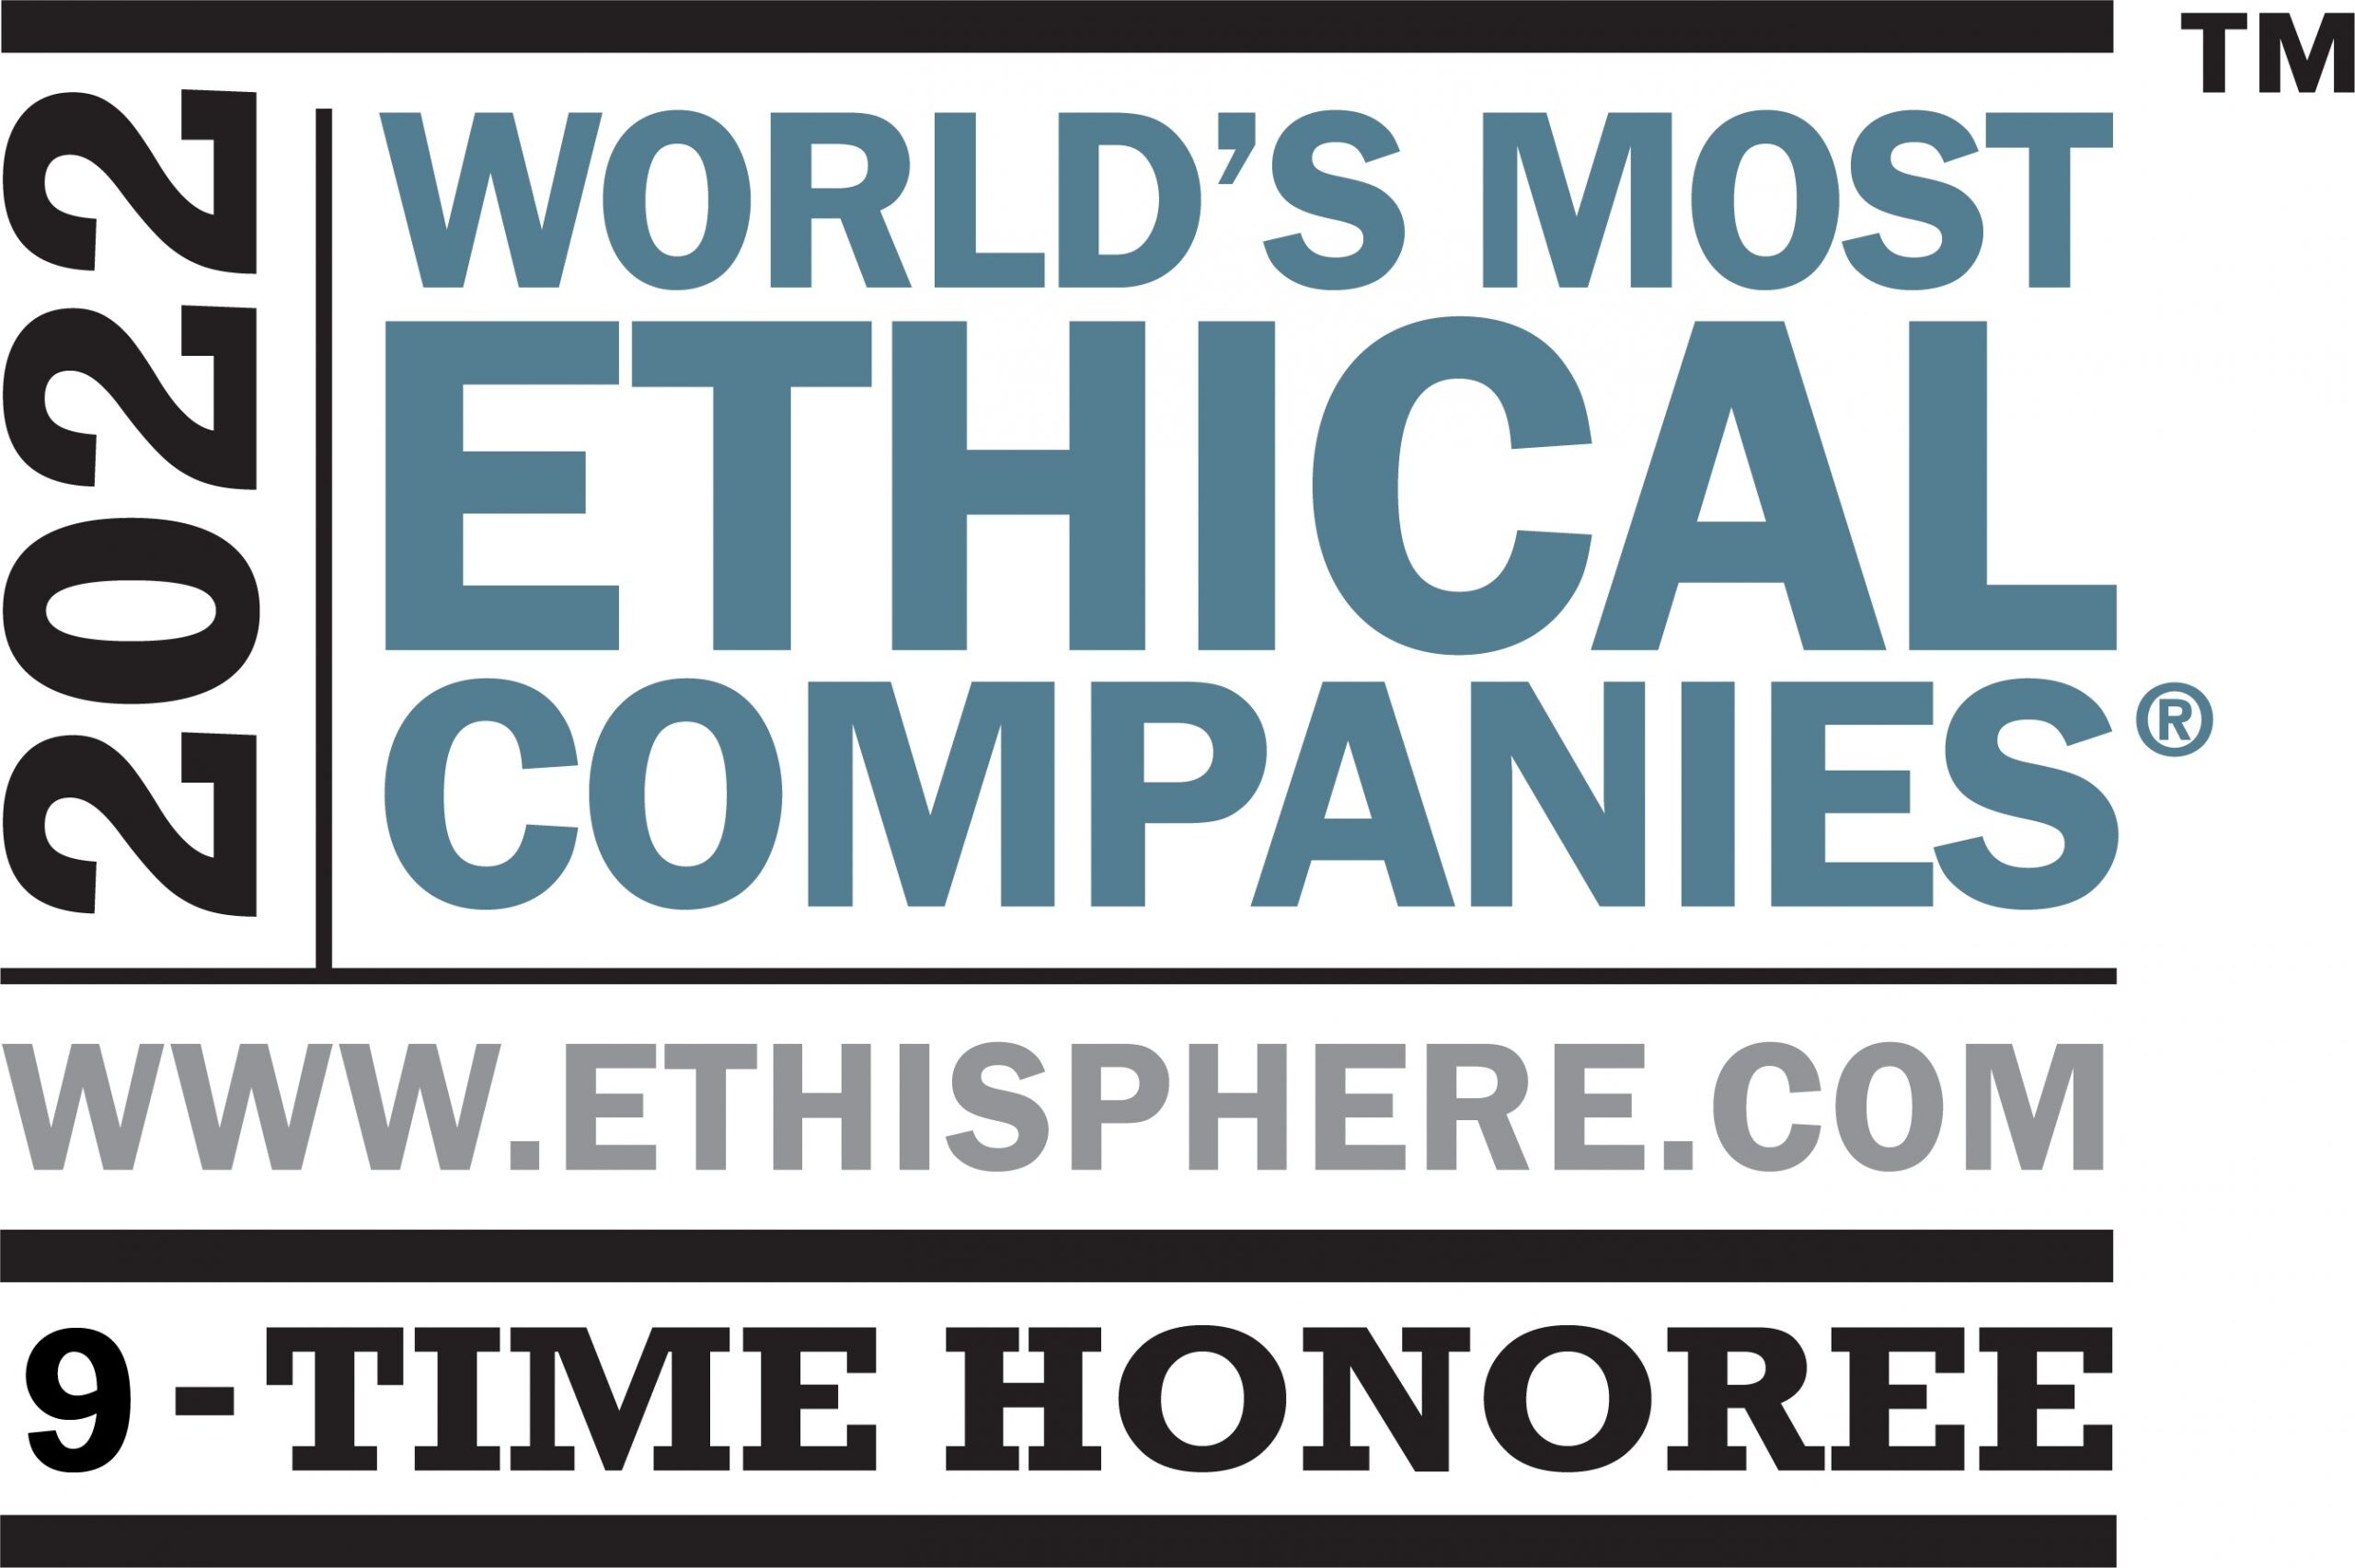 3เอ็ม คว้ารางวัล "บริษัทที่มีจริยธรรมสูงสุดในโลก" ติดต่อกัน 9 ปีซ้อน